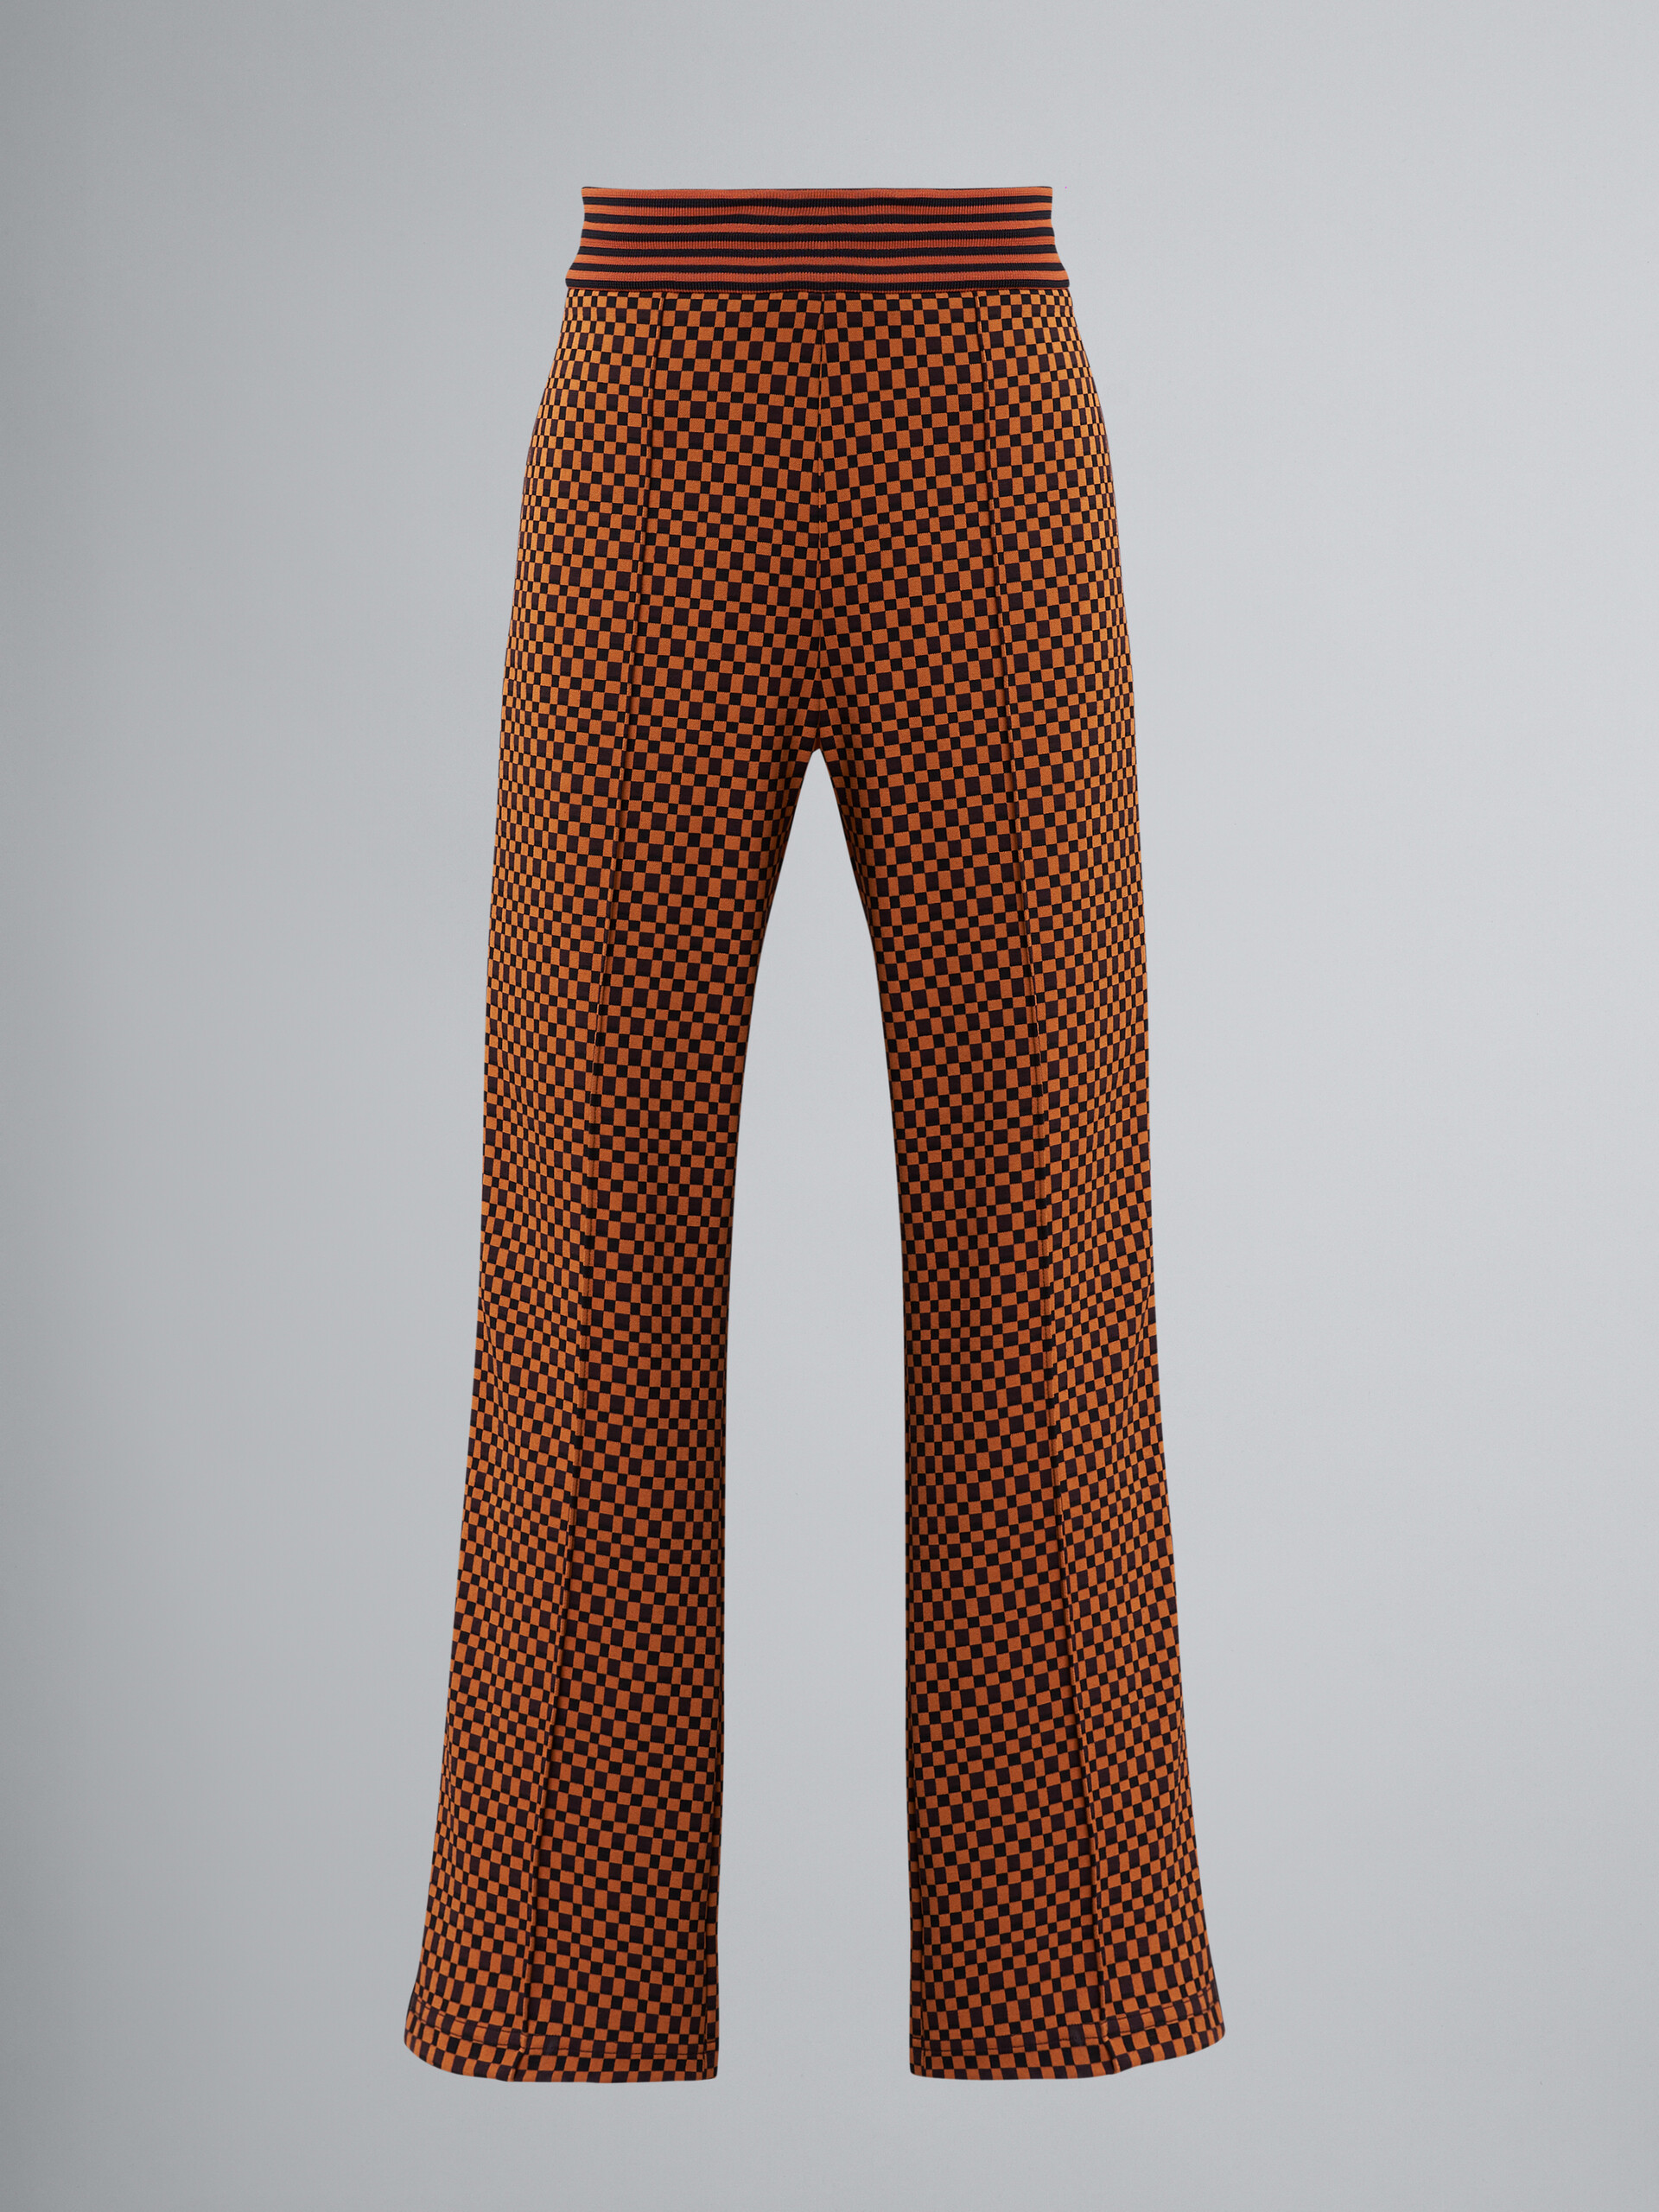 Pantaloni in jersey jacquard a riquadri - Pantaloni - Image 1